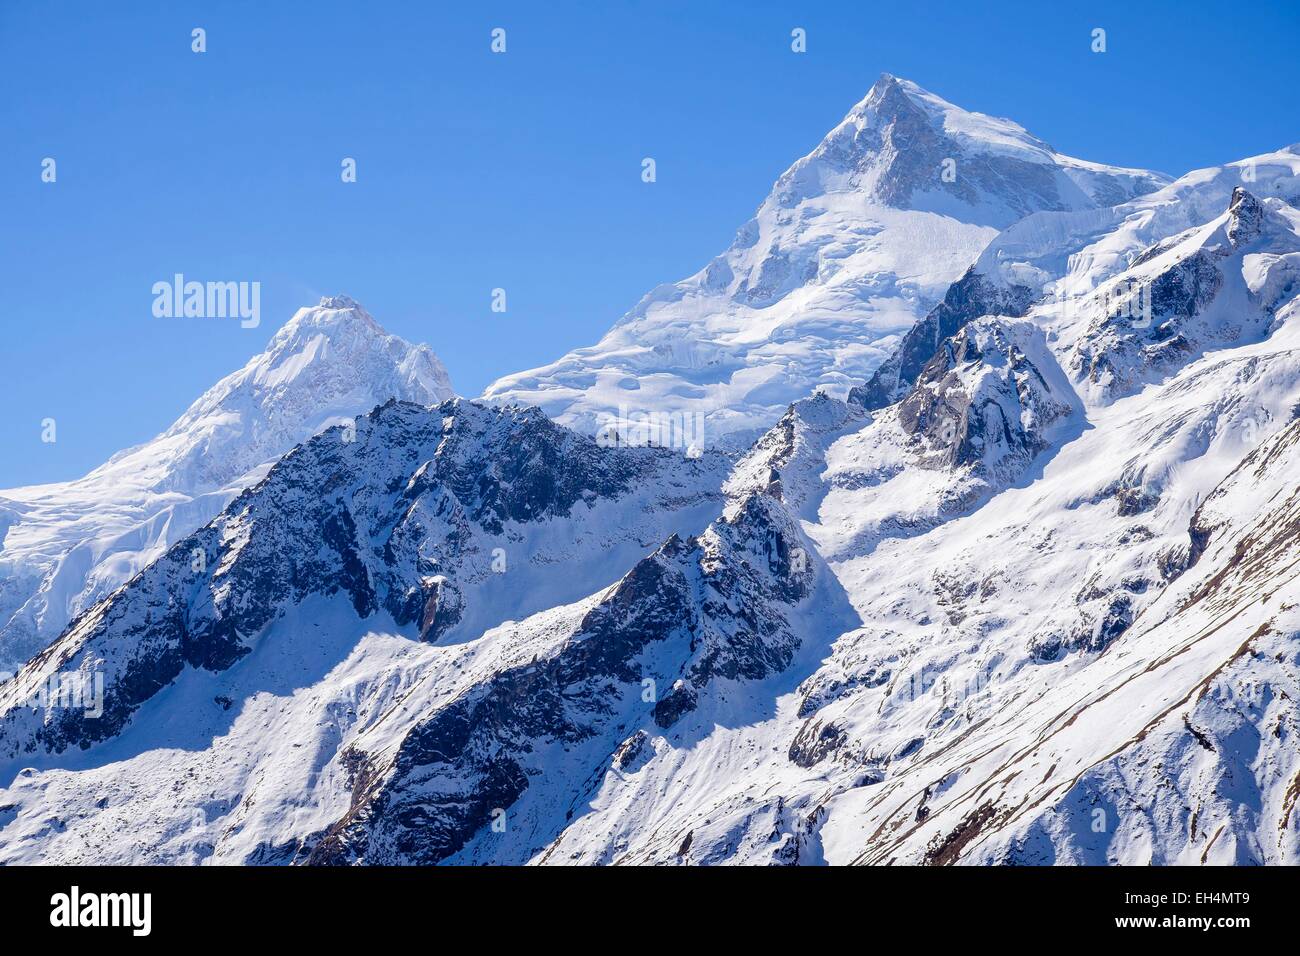 Le Népal, Gandaki zone, Manaslu Circuit, entre Samagaon et Samdo, le mont Manaslu (alt.8156m) Banque D'Images